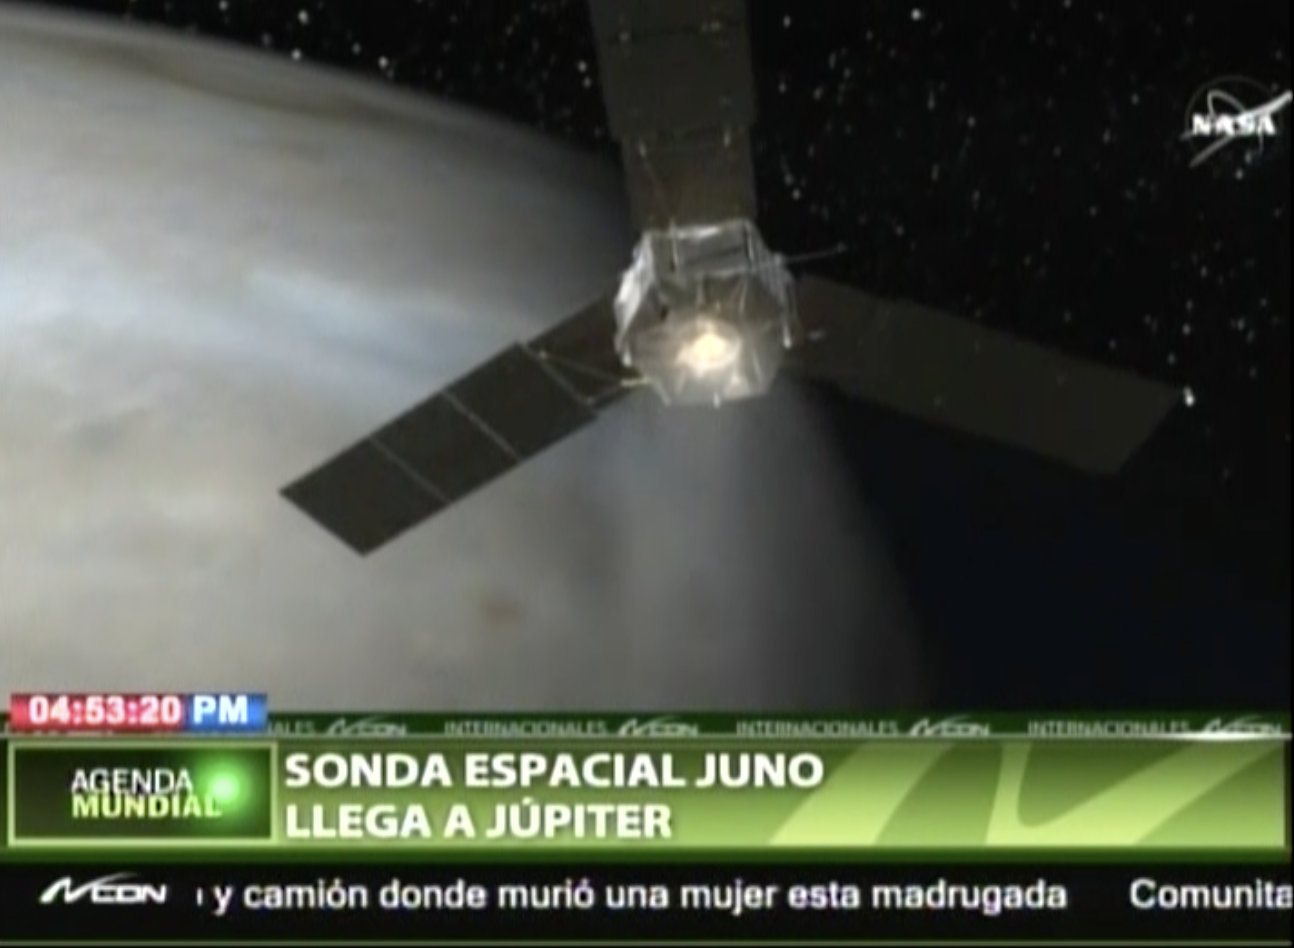 La Sonda Espacial “Juno” Llega A Júpiter Después De 5 Años De Viaje Por El Sistema Solar